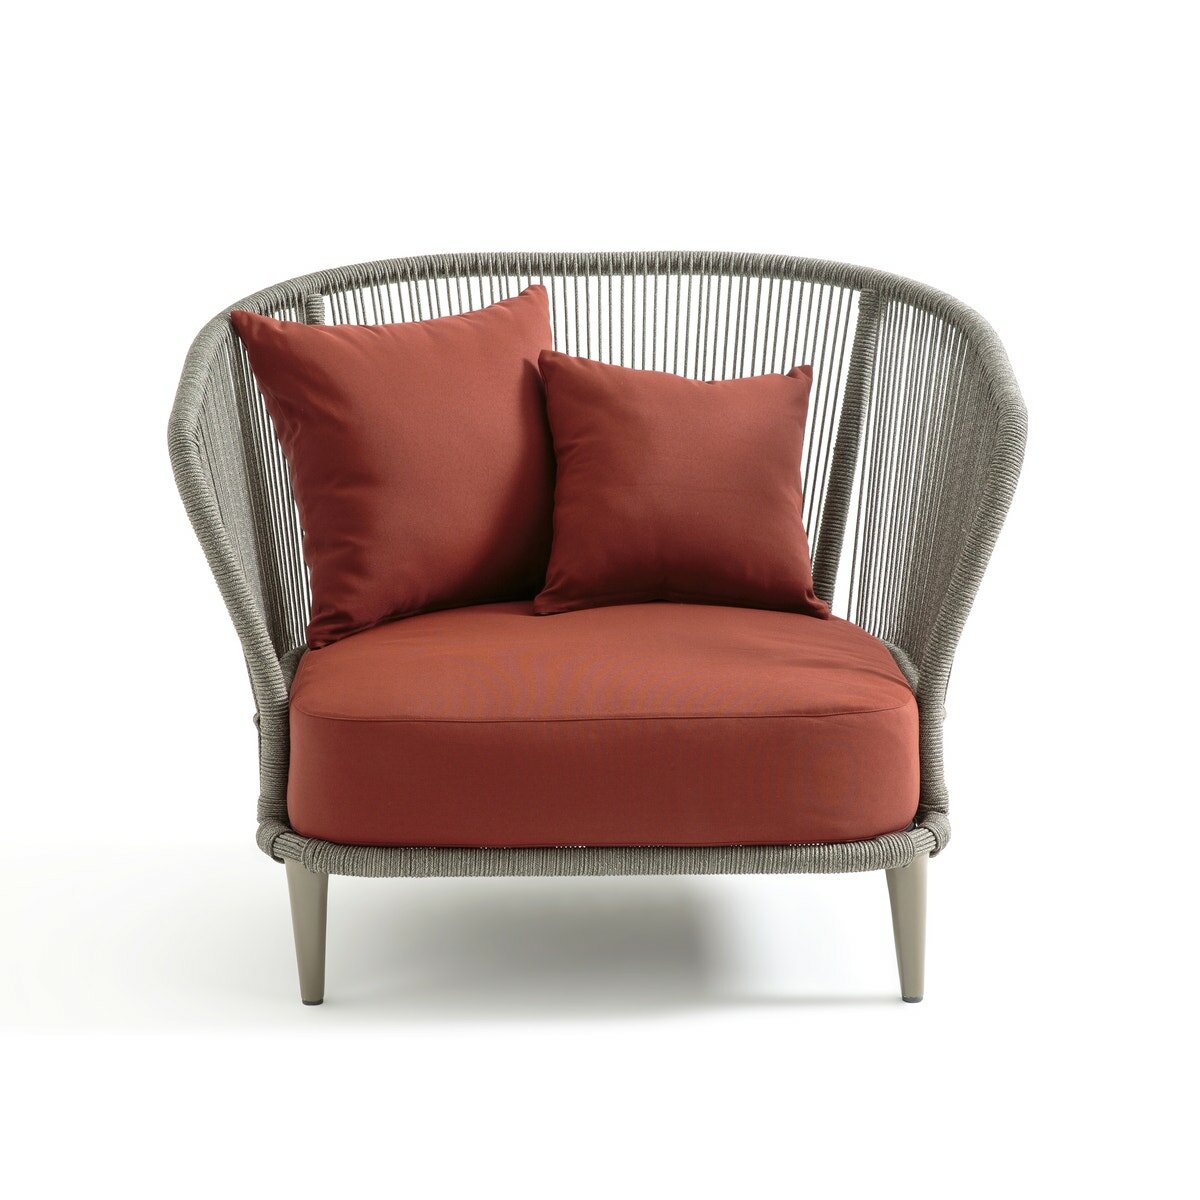 Кресло La Redoute Для сада дизайн Э Галлины Cestino единый размер каштановый